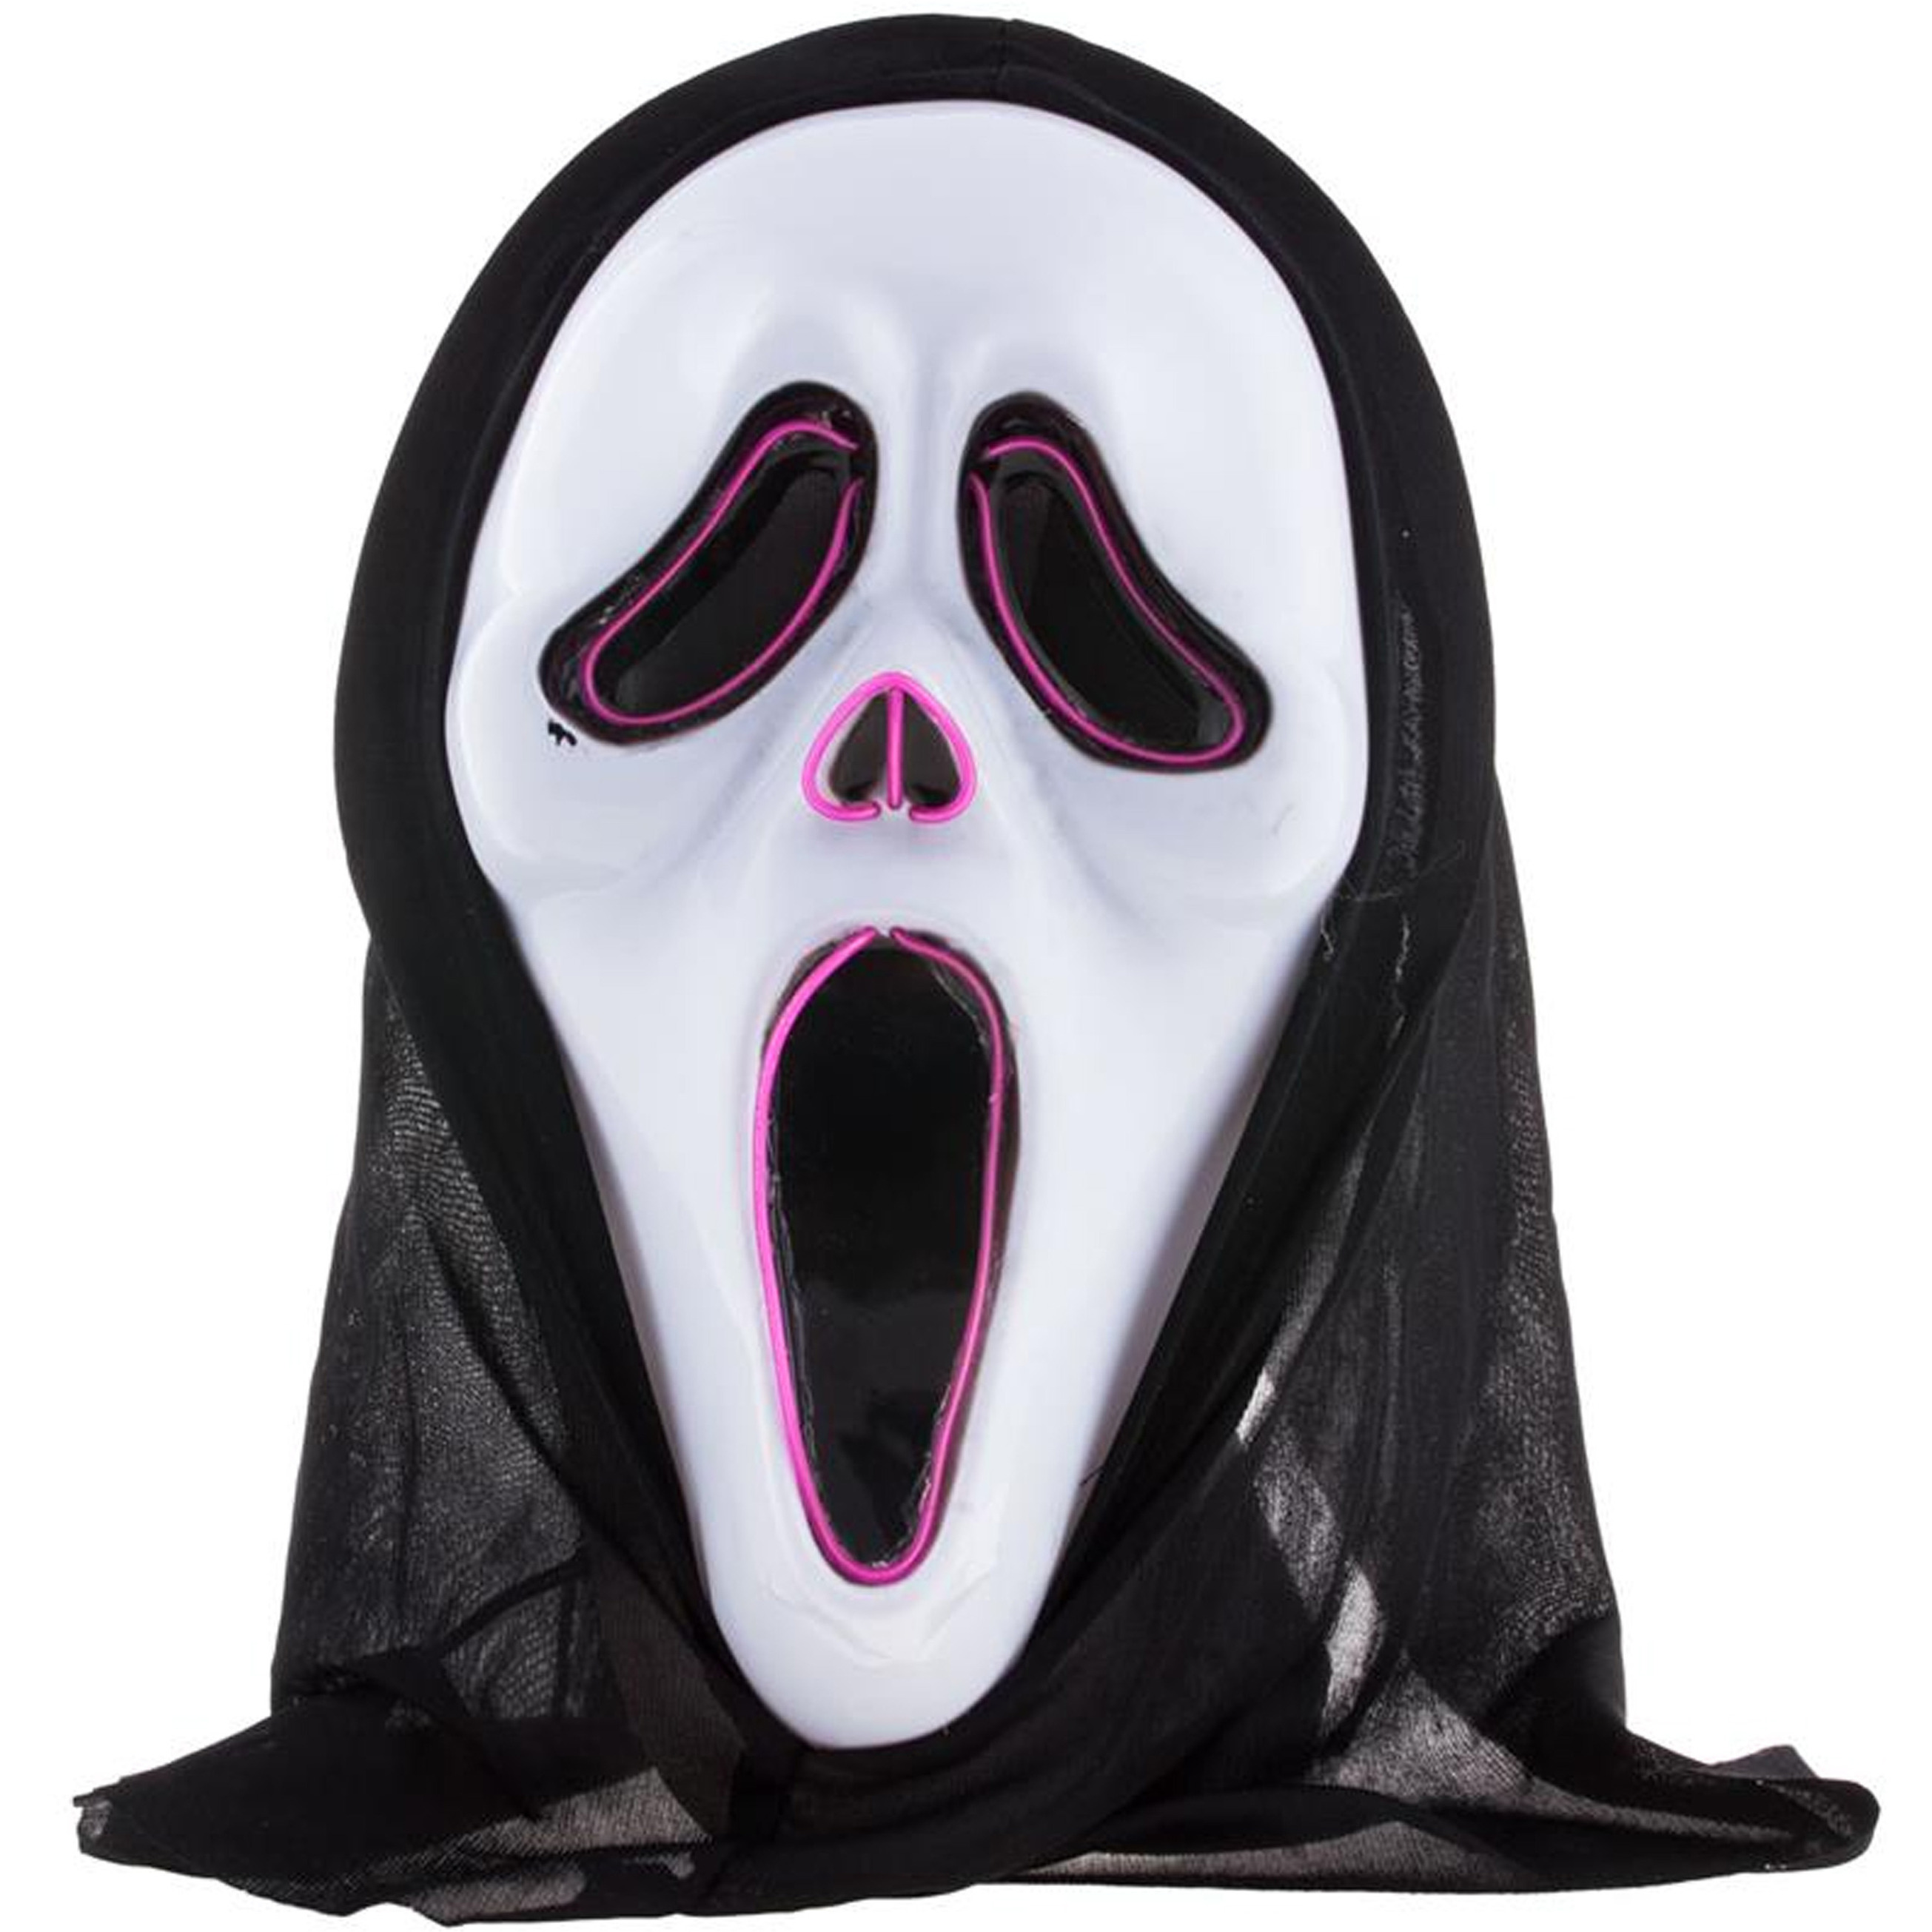 Halloween thema verkleed masker - Scream/Ghostface - volwassenen - met kap - met LED licht